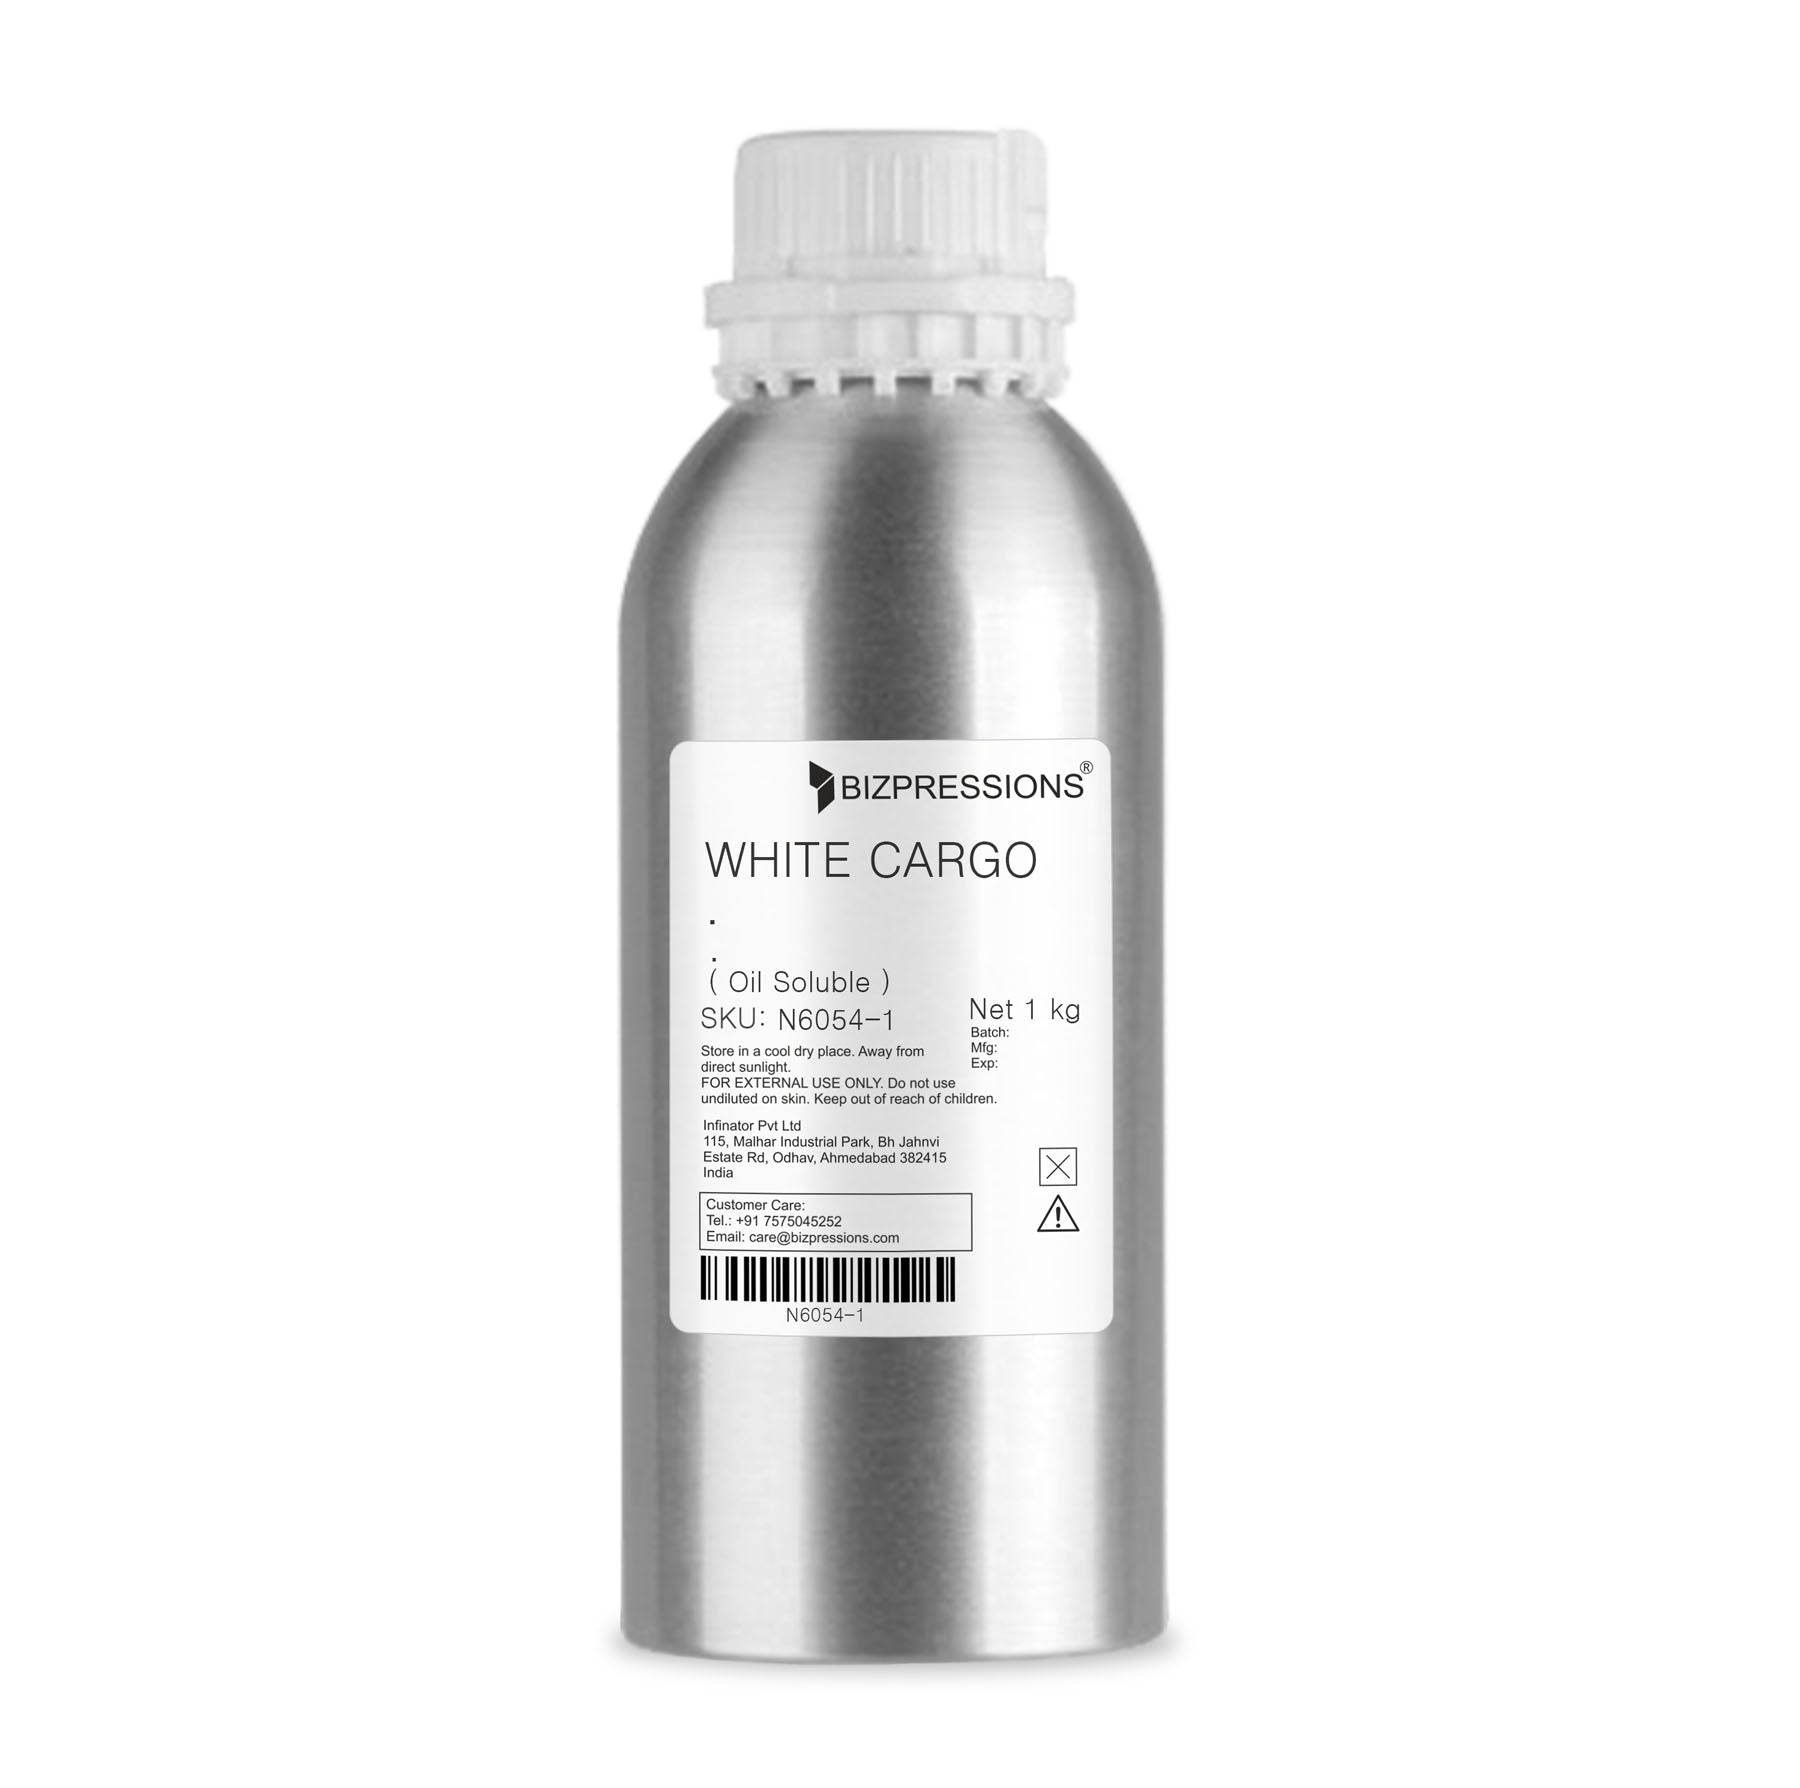 WHITE CARGO - Fragrance ( Oil Soluble ) - 1 kg